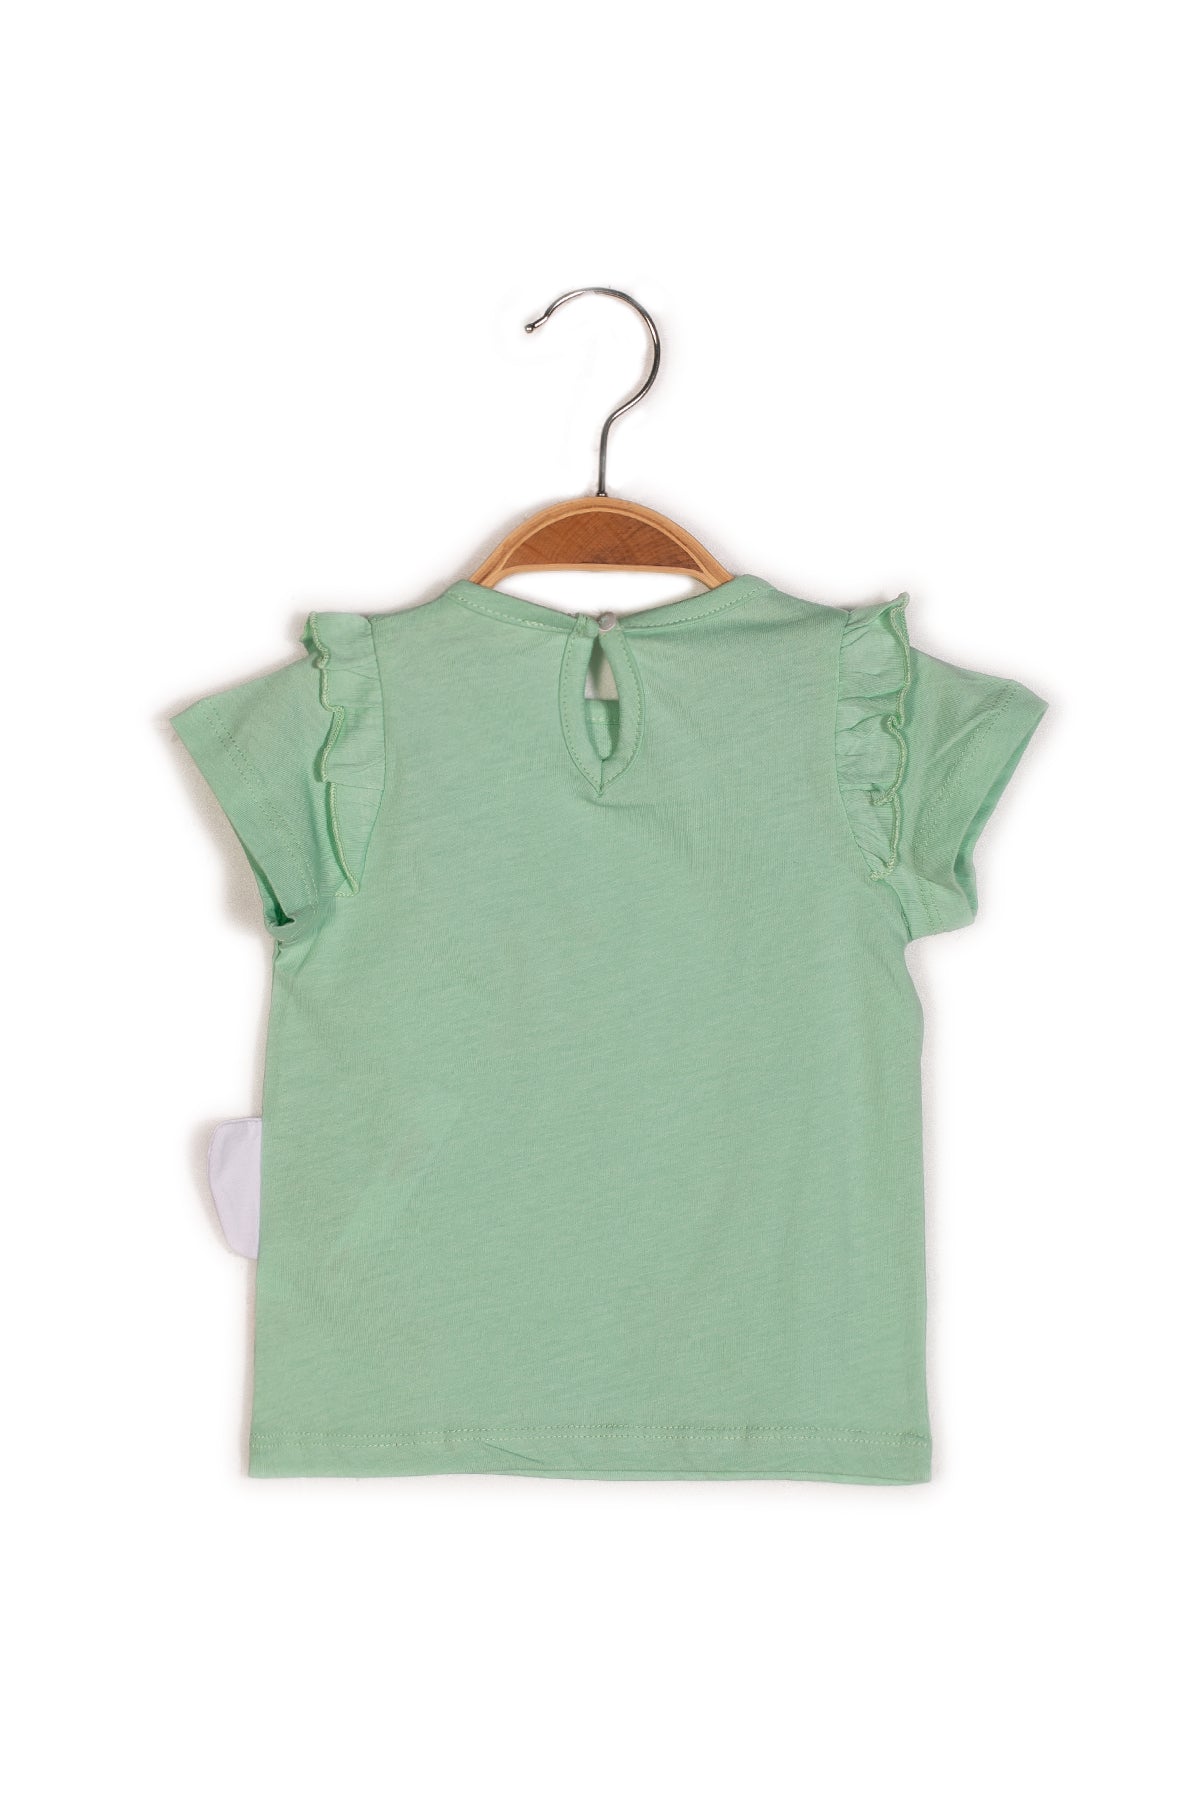 Kız Bebek Baskılı Kısa Kollu T-shirt-1